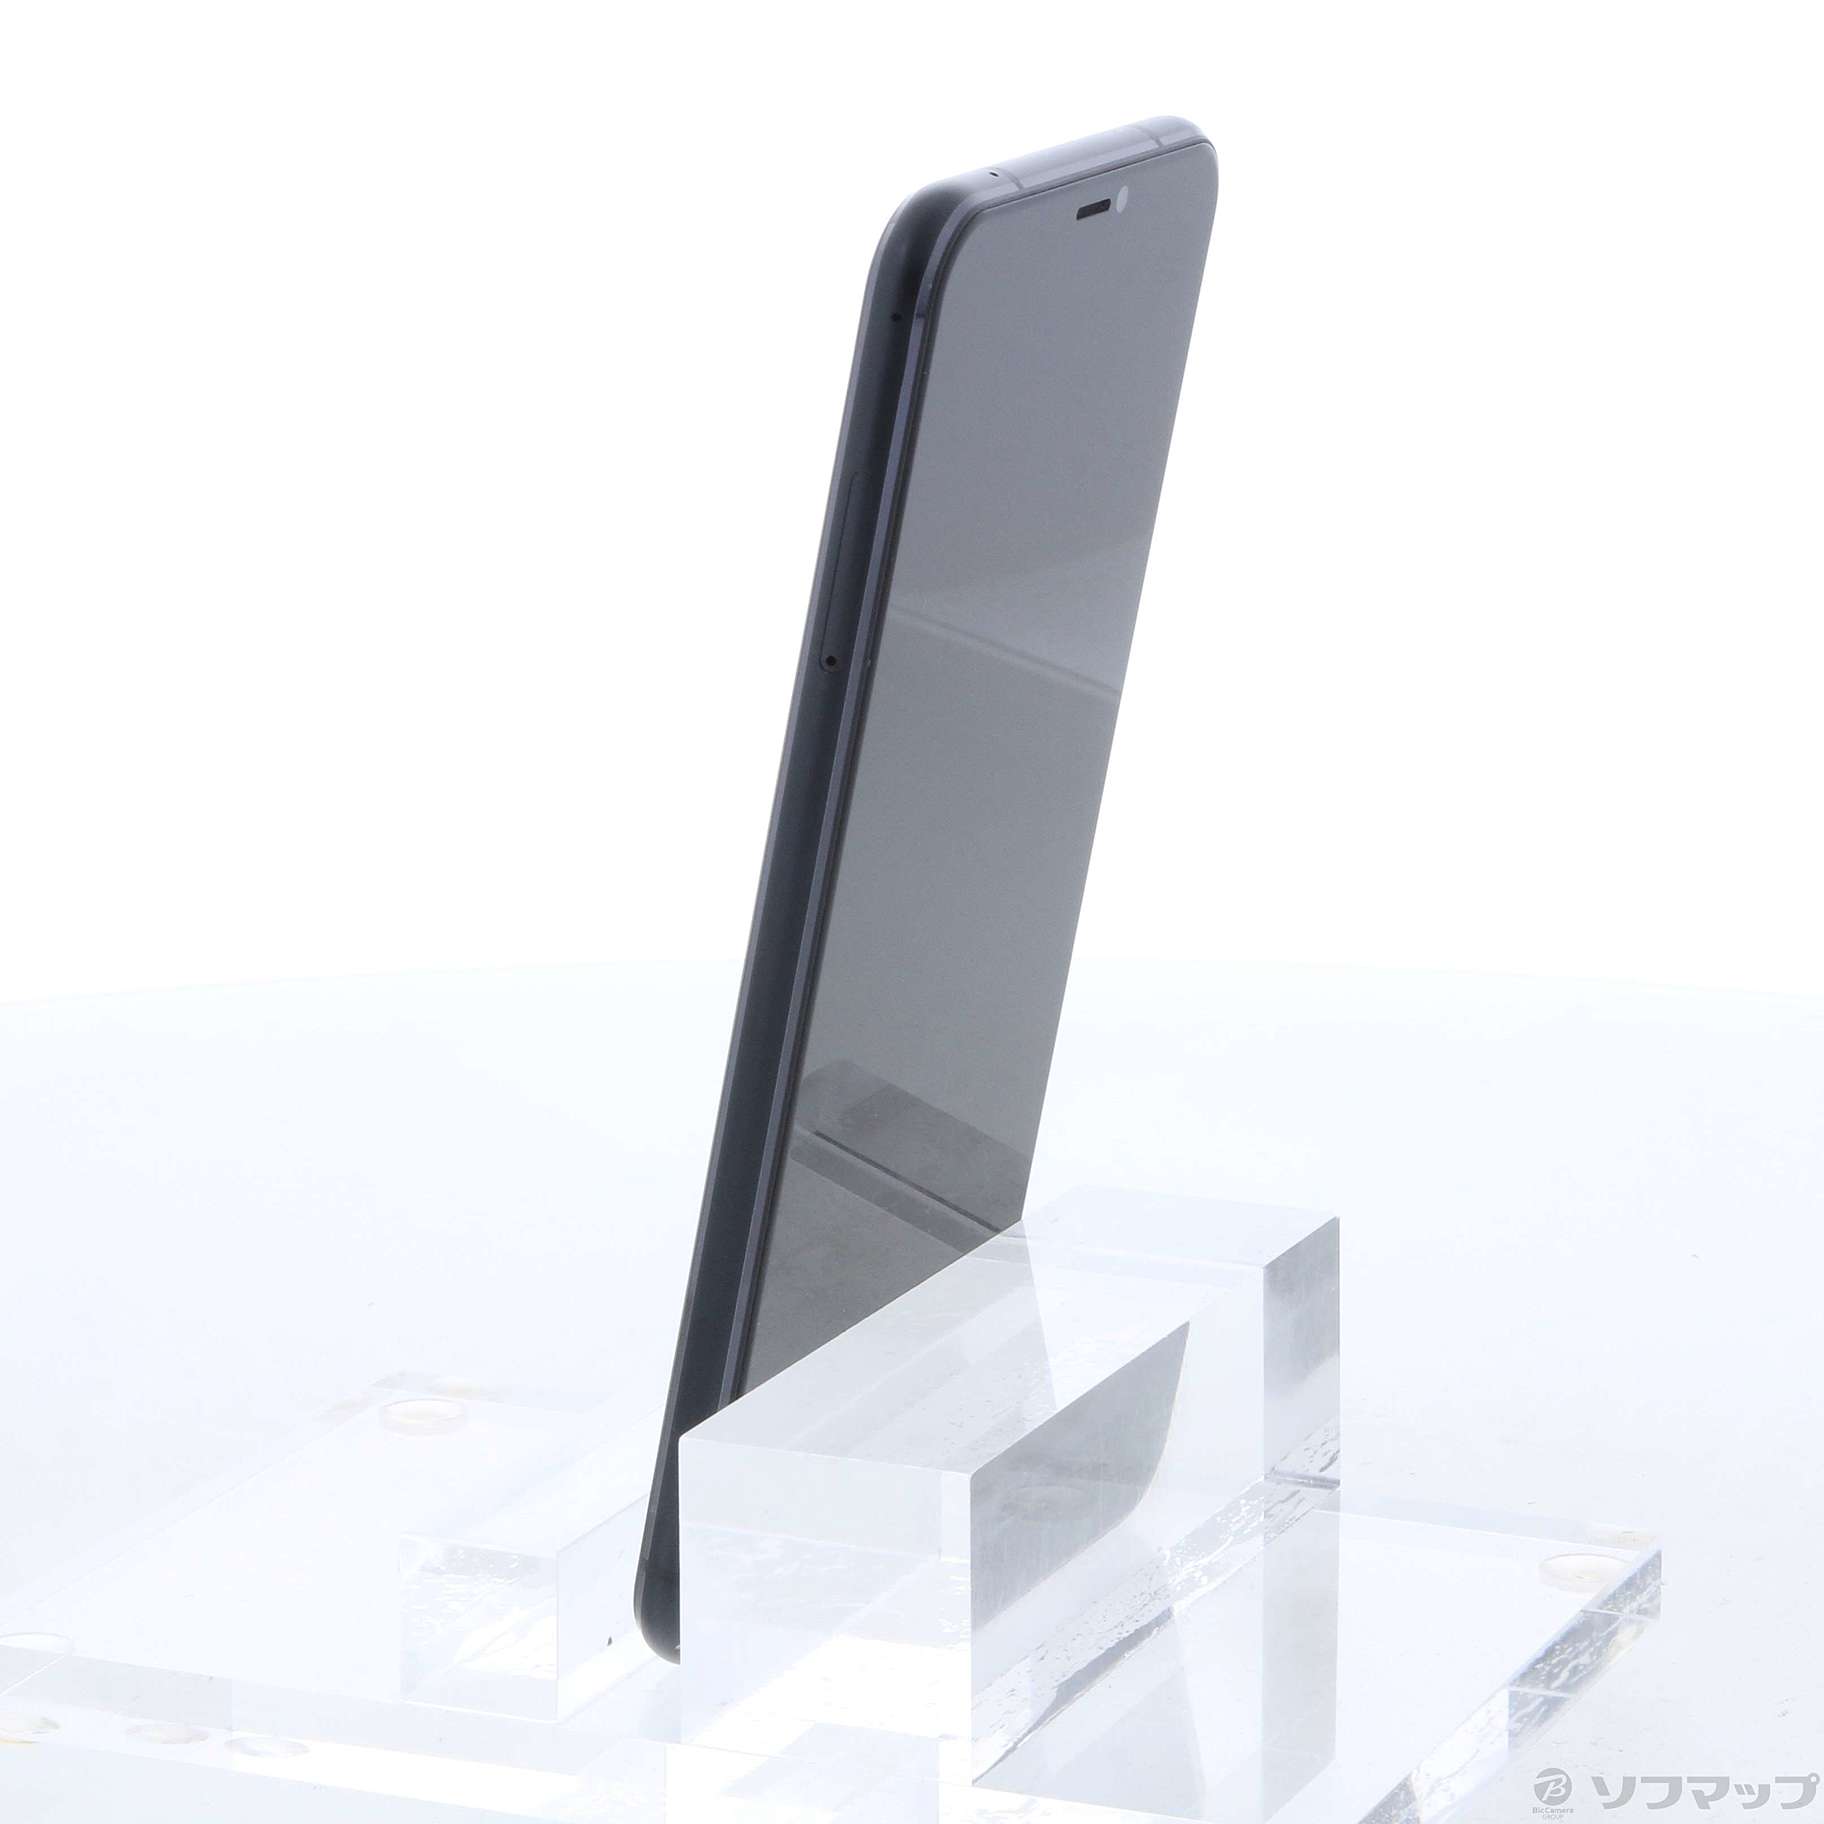 【入荷実績】ZenFone 5 シャイニーブラック 64 GB SIMフリー　手帳 スマートフォン本体